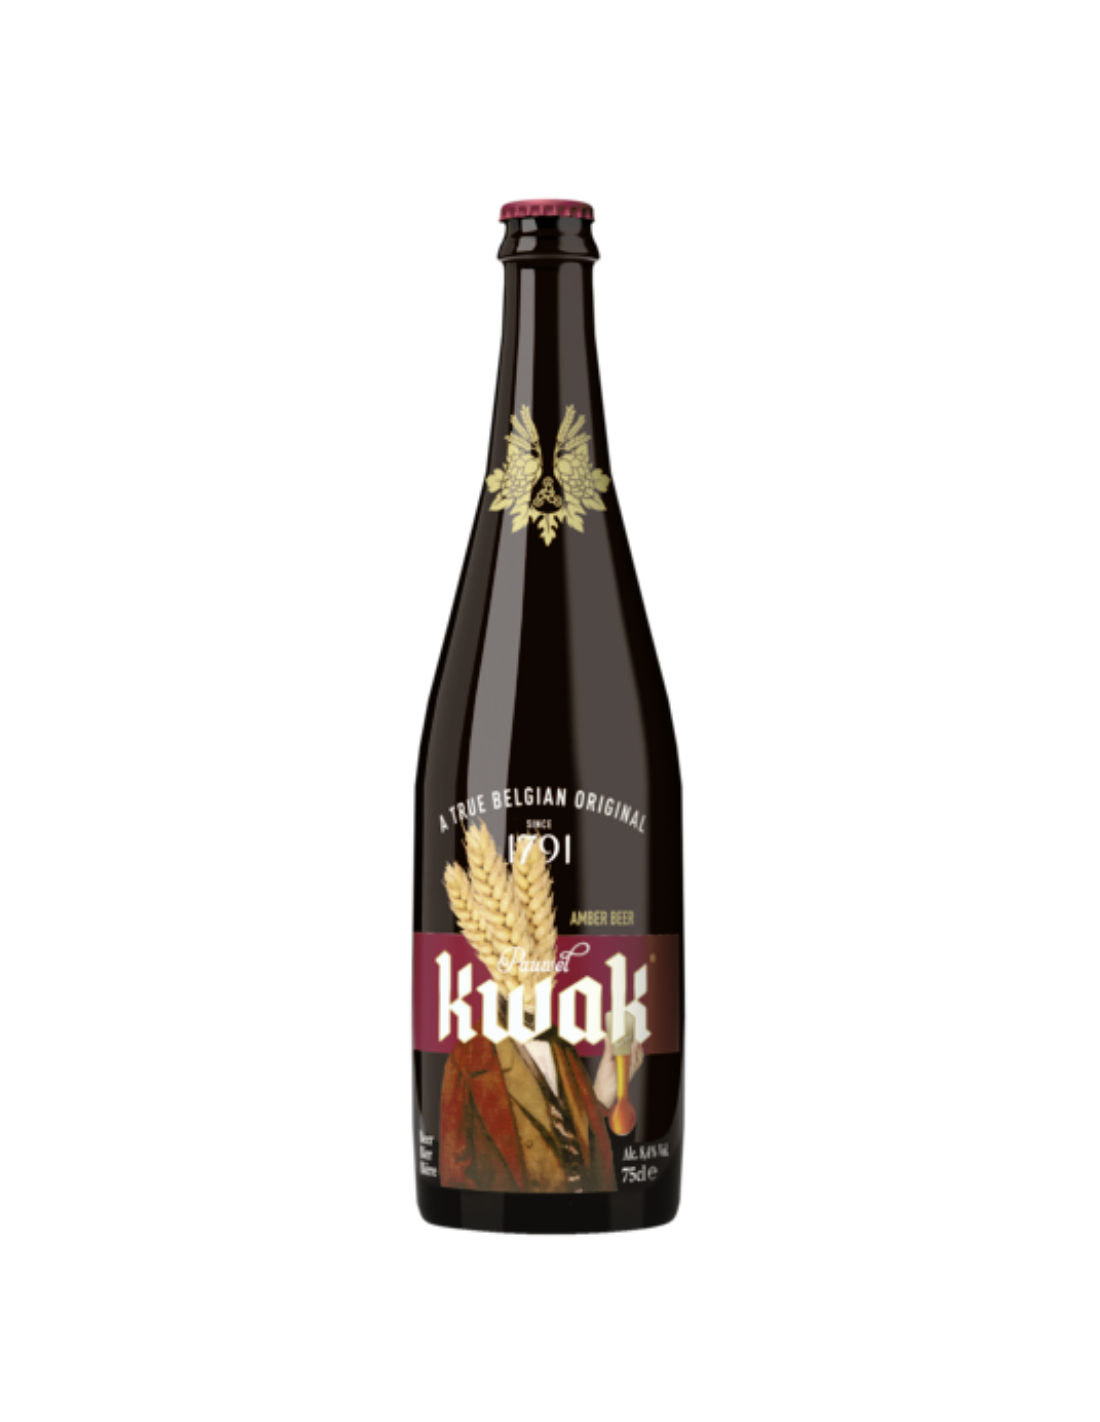 Bere blonda Pauwel Kwak, 8.4% alc., 0.75L, sticla, Belgia alcooldiscount.ro